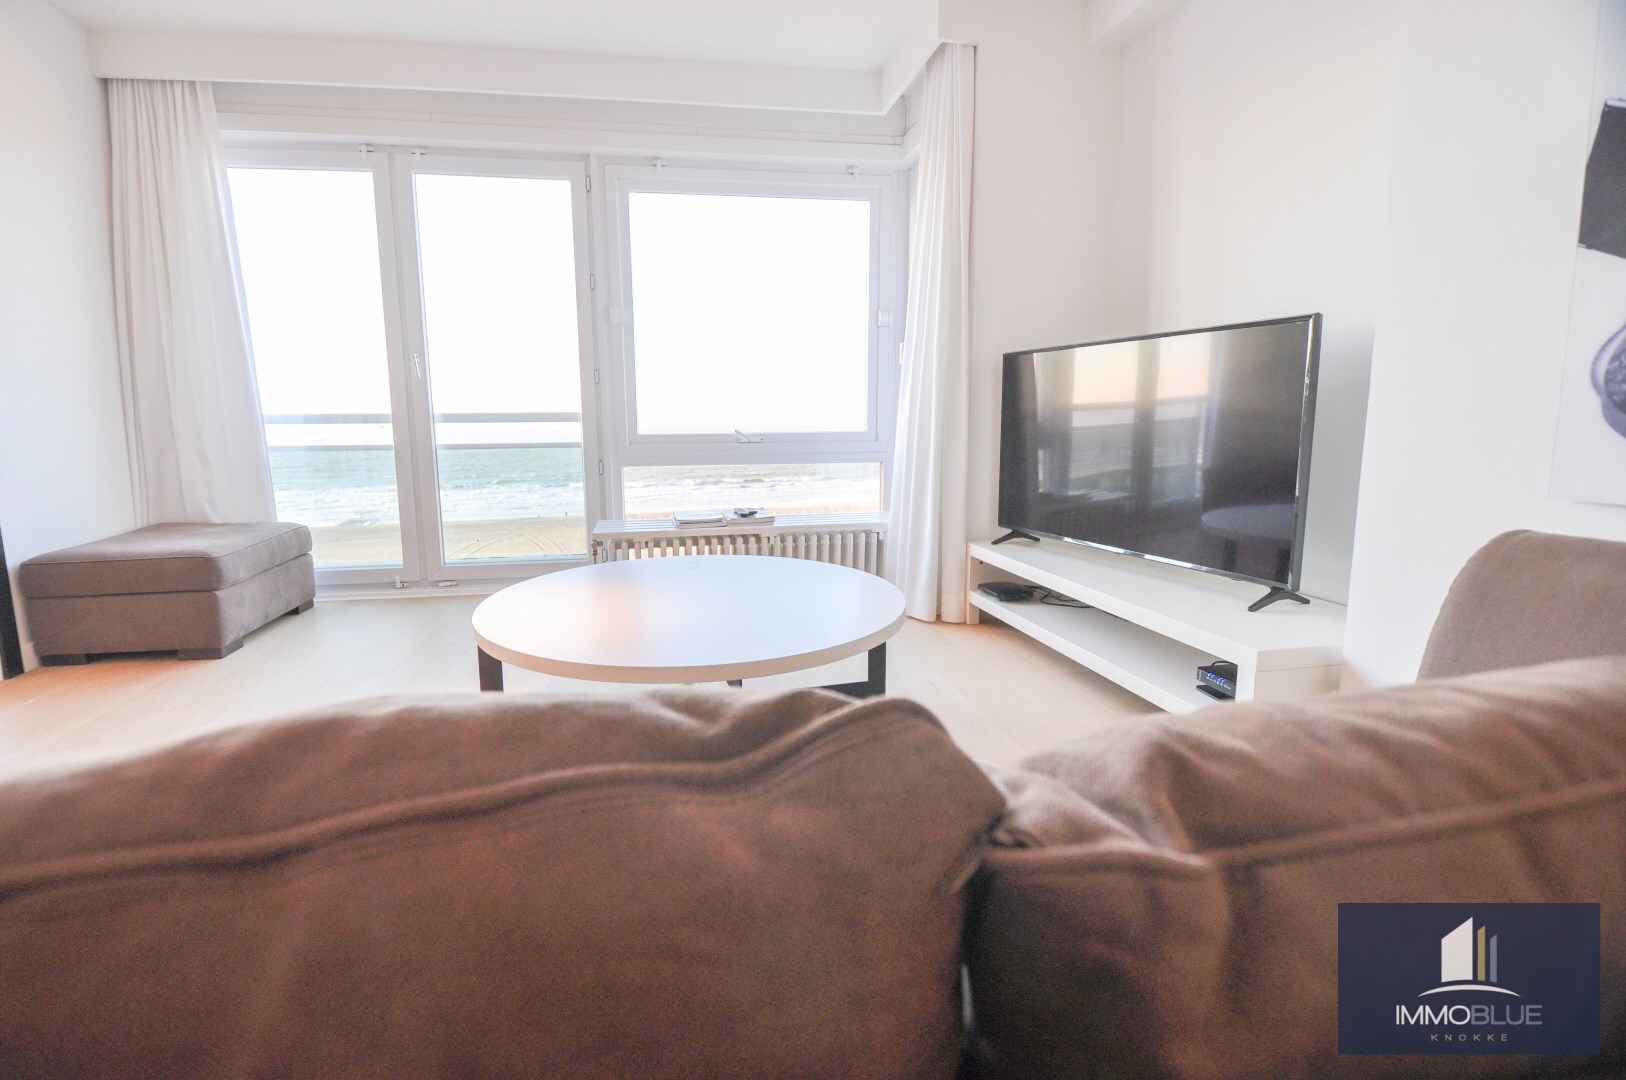 Appartement met frontaal zeezicht gelegen nabij het Albertplein. 